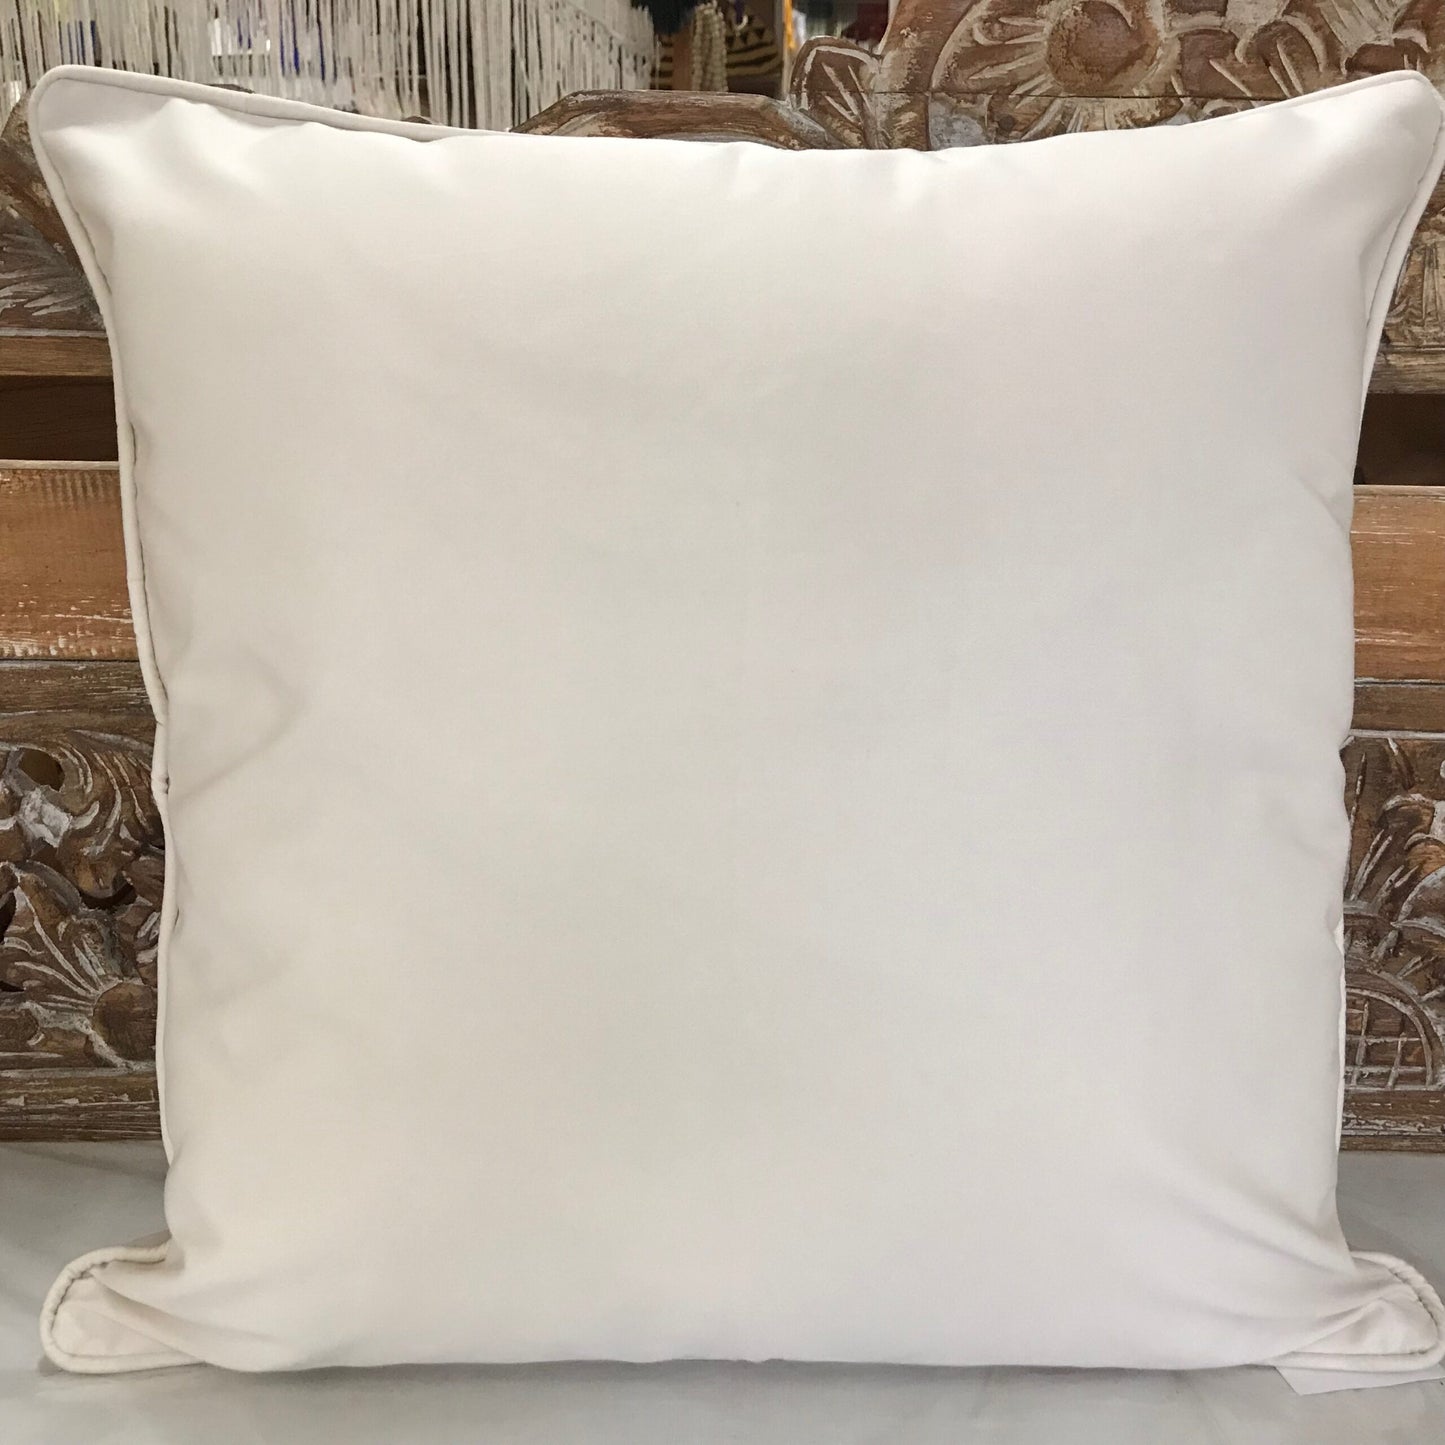 Cotton Ikat Cushion Cover 45cm x 45cm